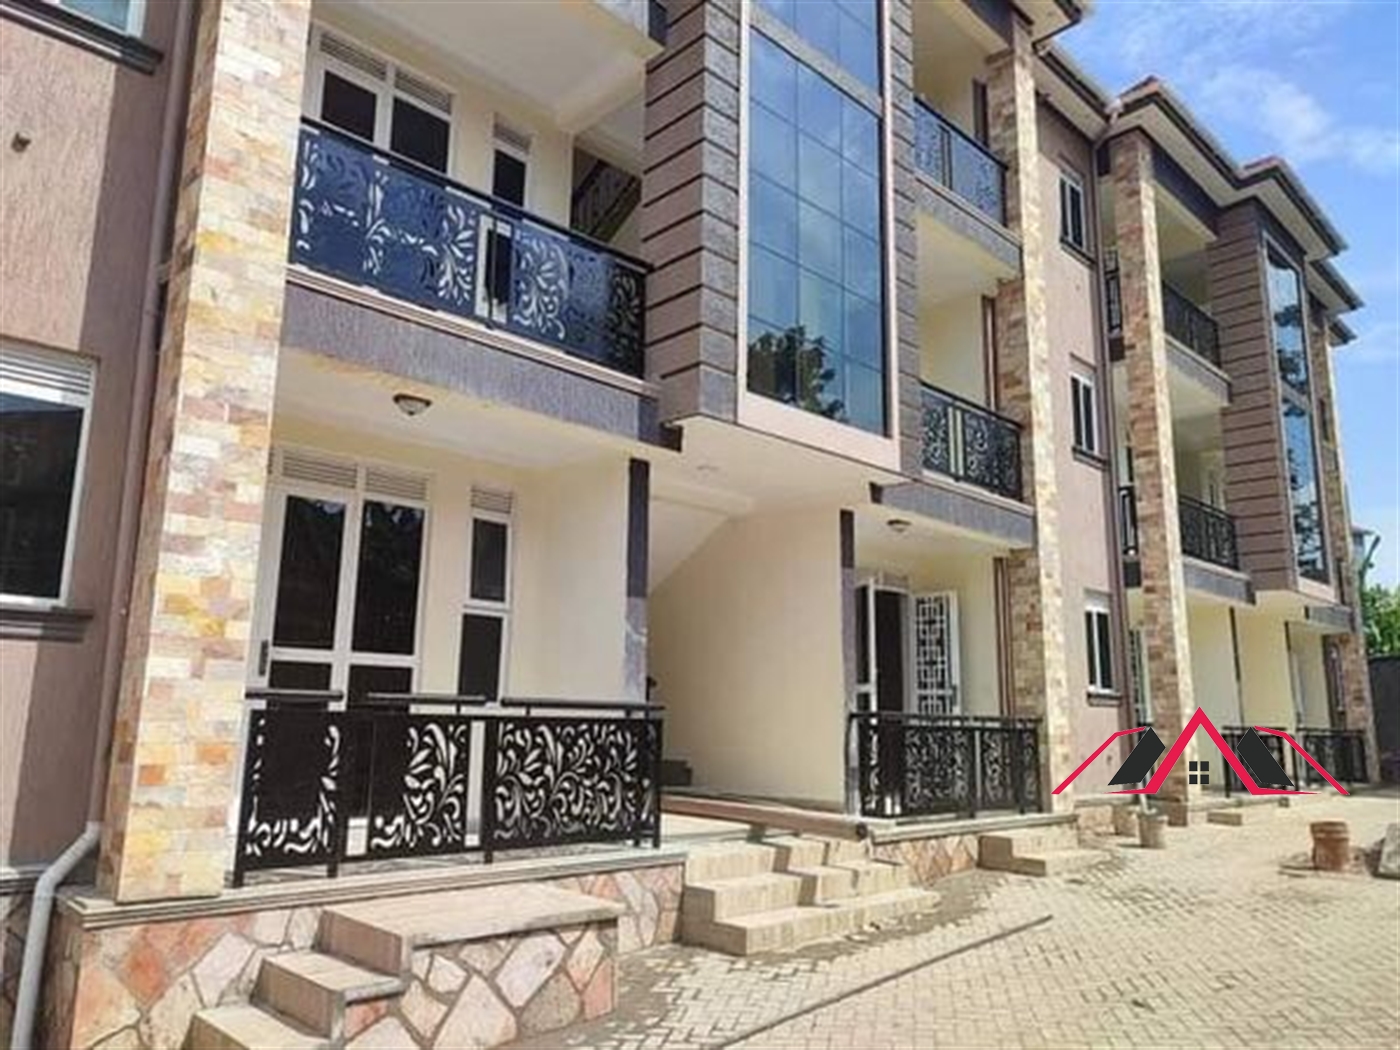 Apartment block for sale in Kisaasi Kampala